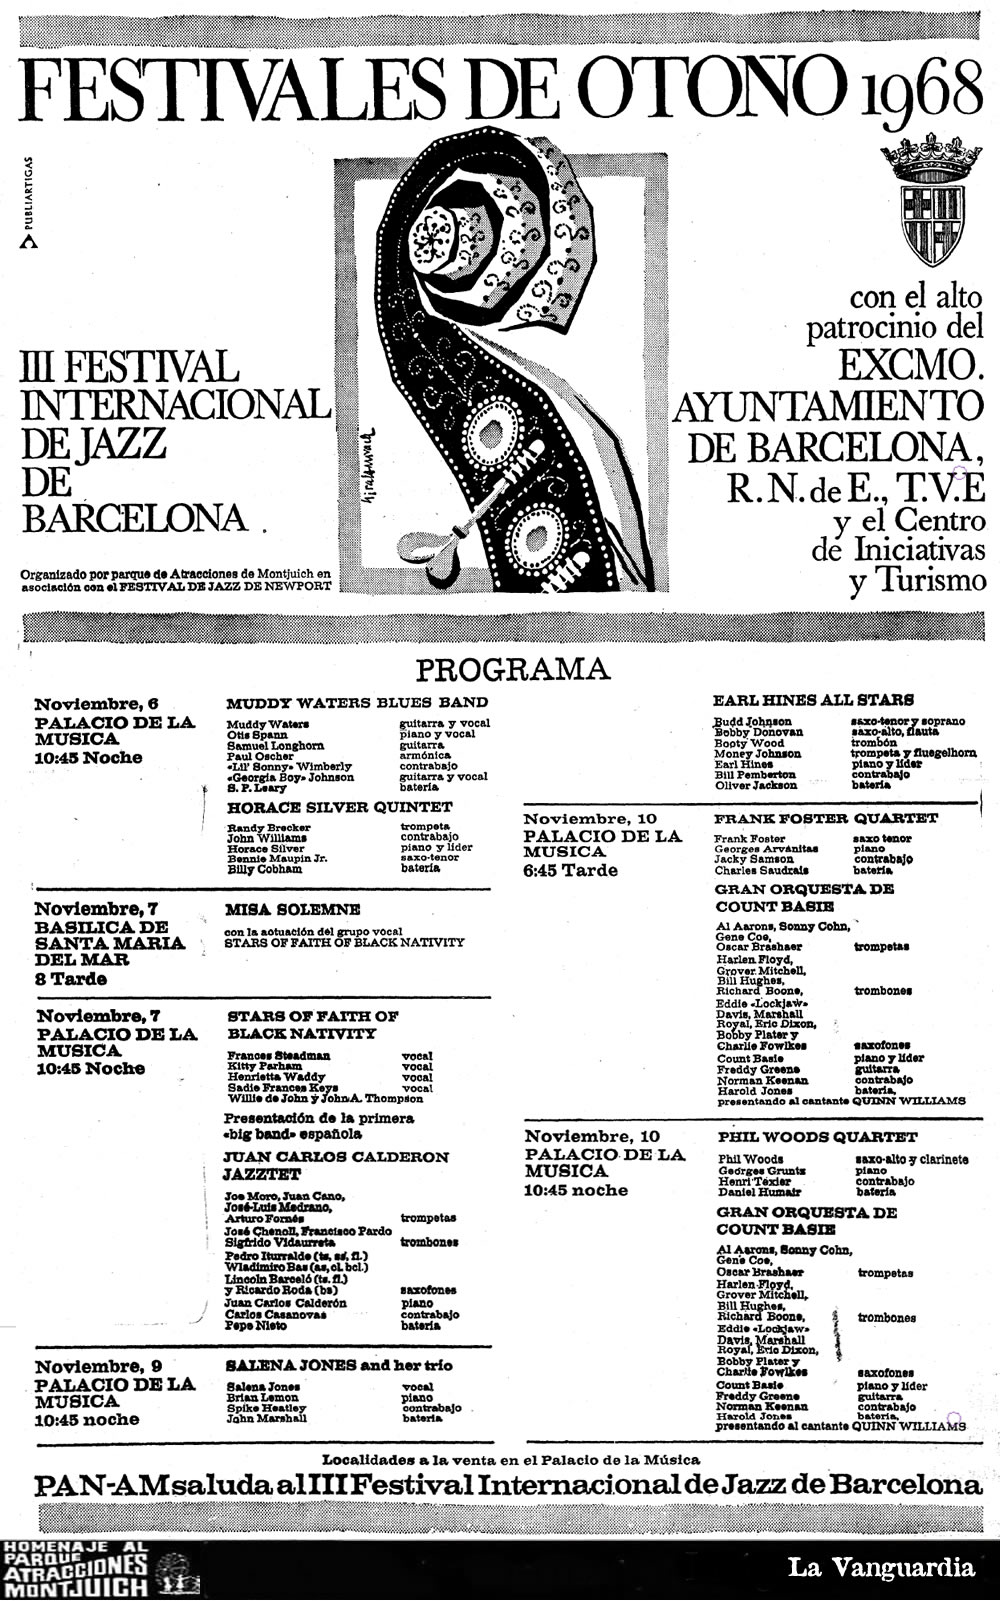 Festivales de otoño 1968